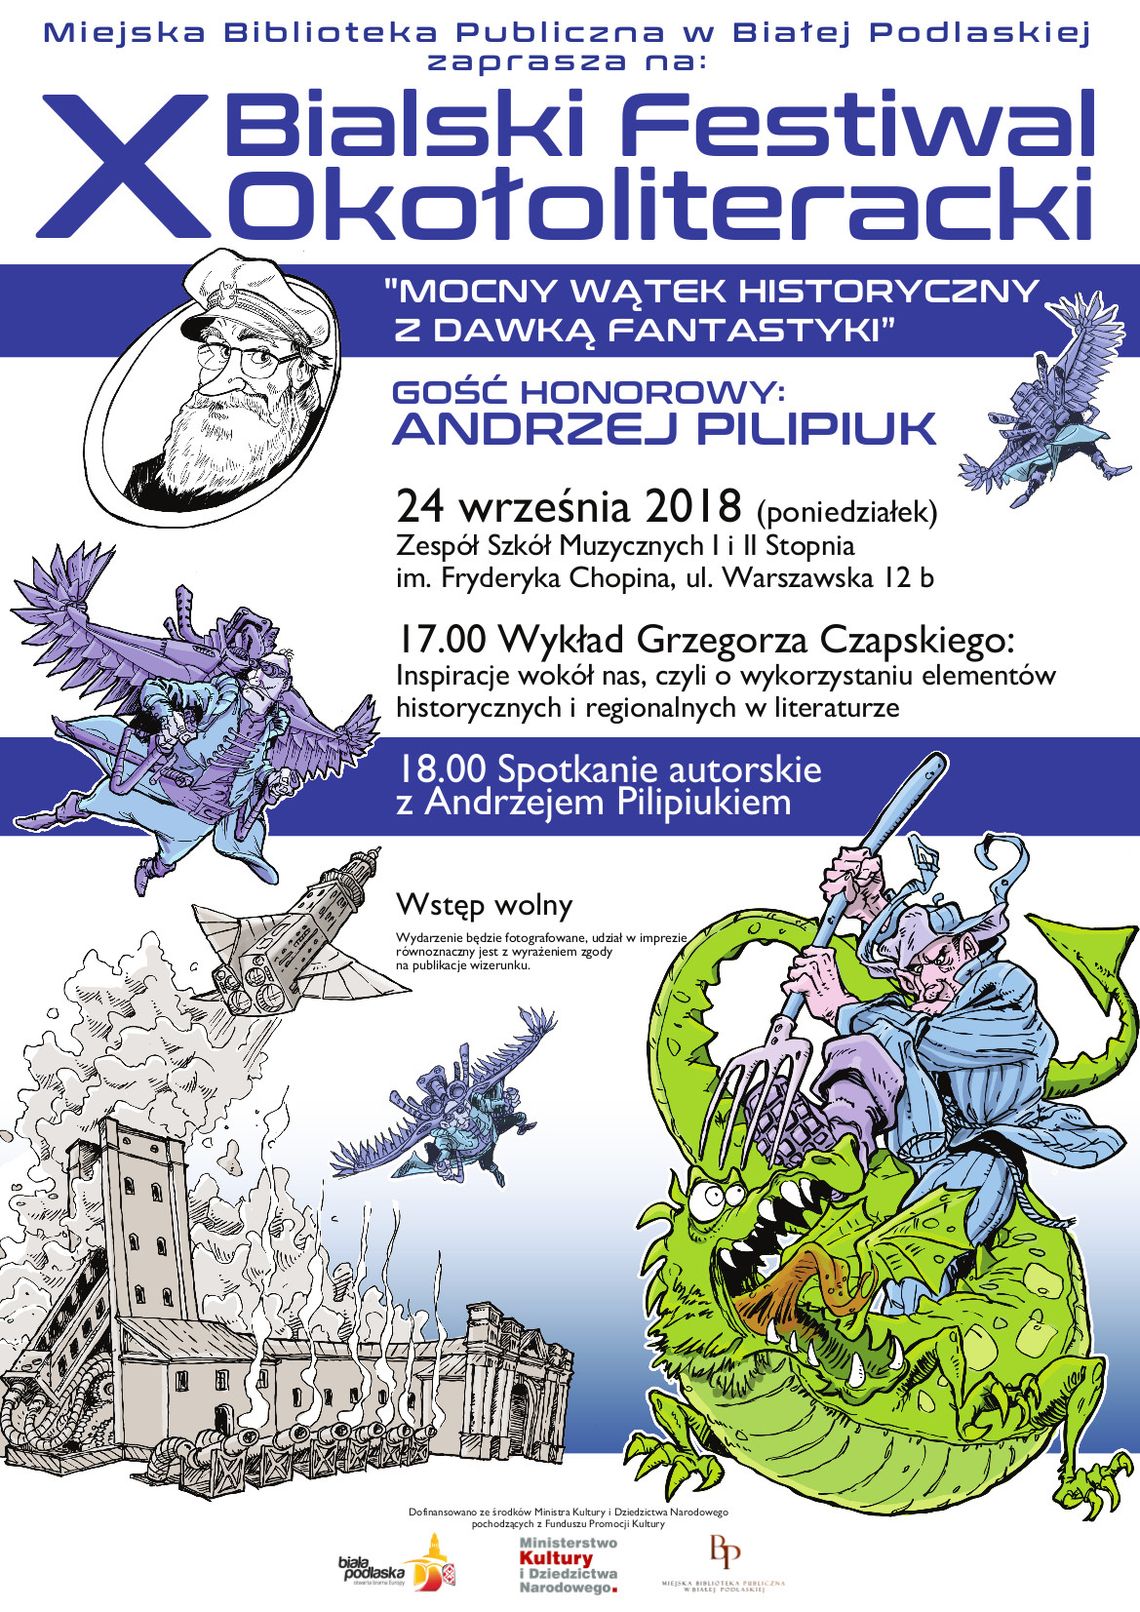 X Bialski Festiwal Okołoliteracki